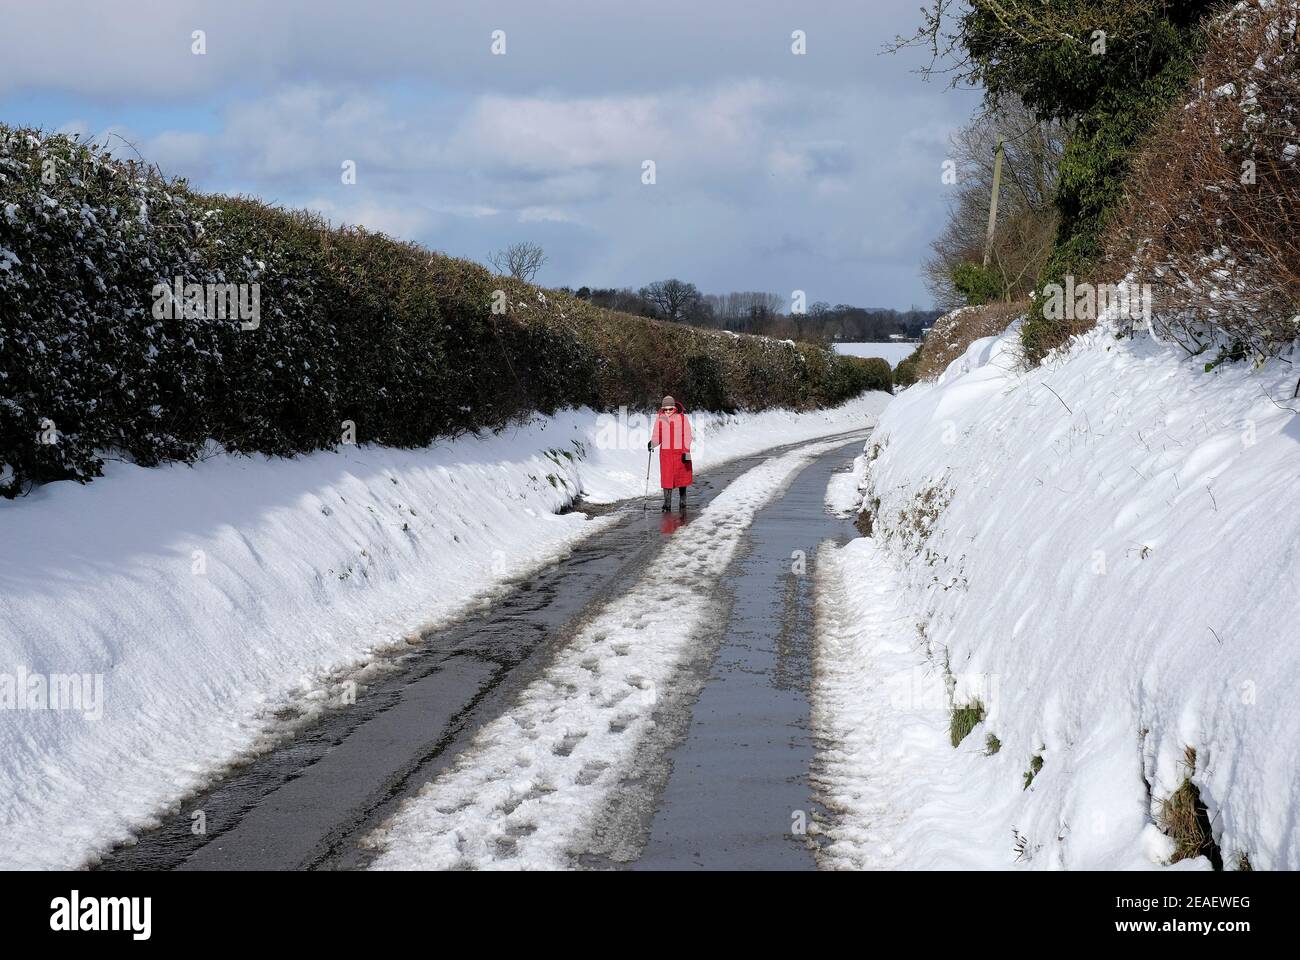 Ältere Person, die auf einer schneebedeckten Landstraße, melton Stable, Nord-norfolk, england, läuft Stockfoto